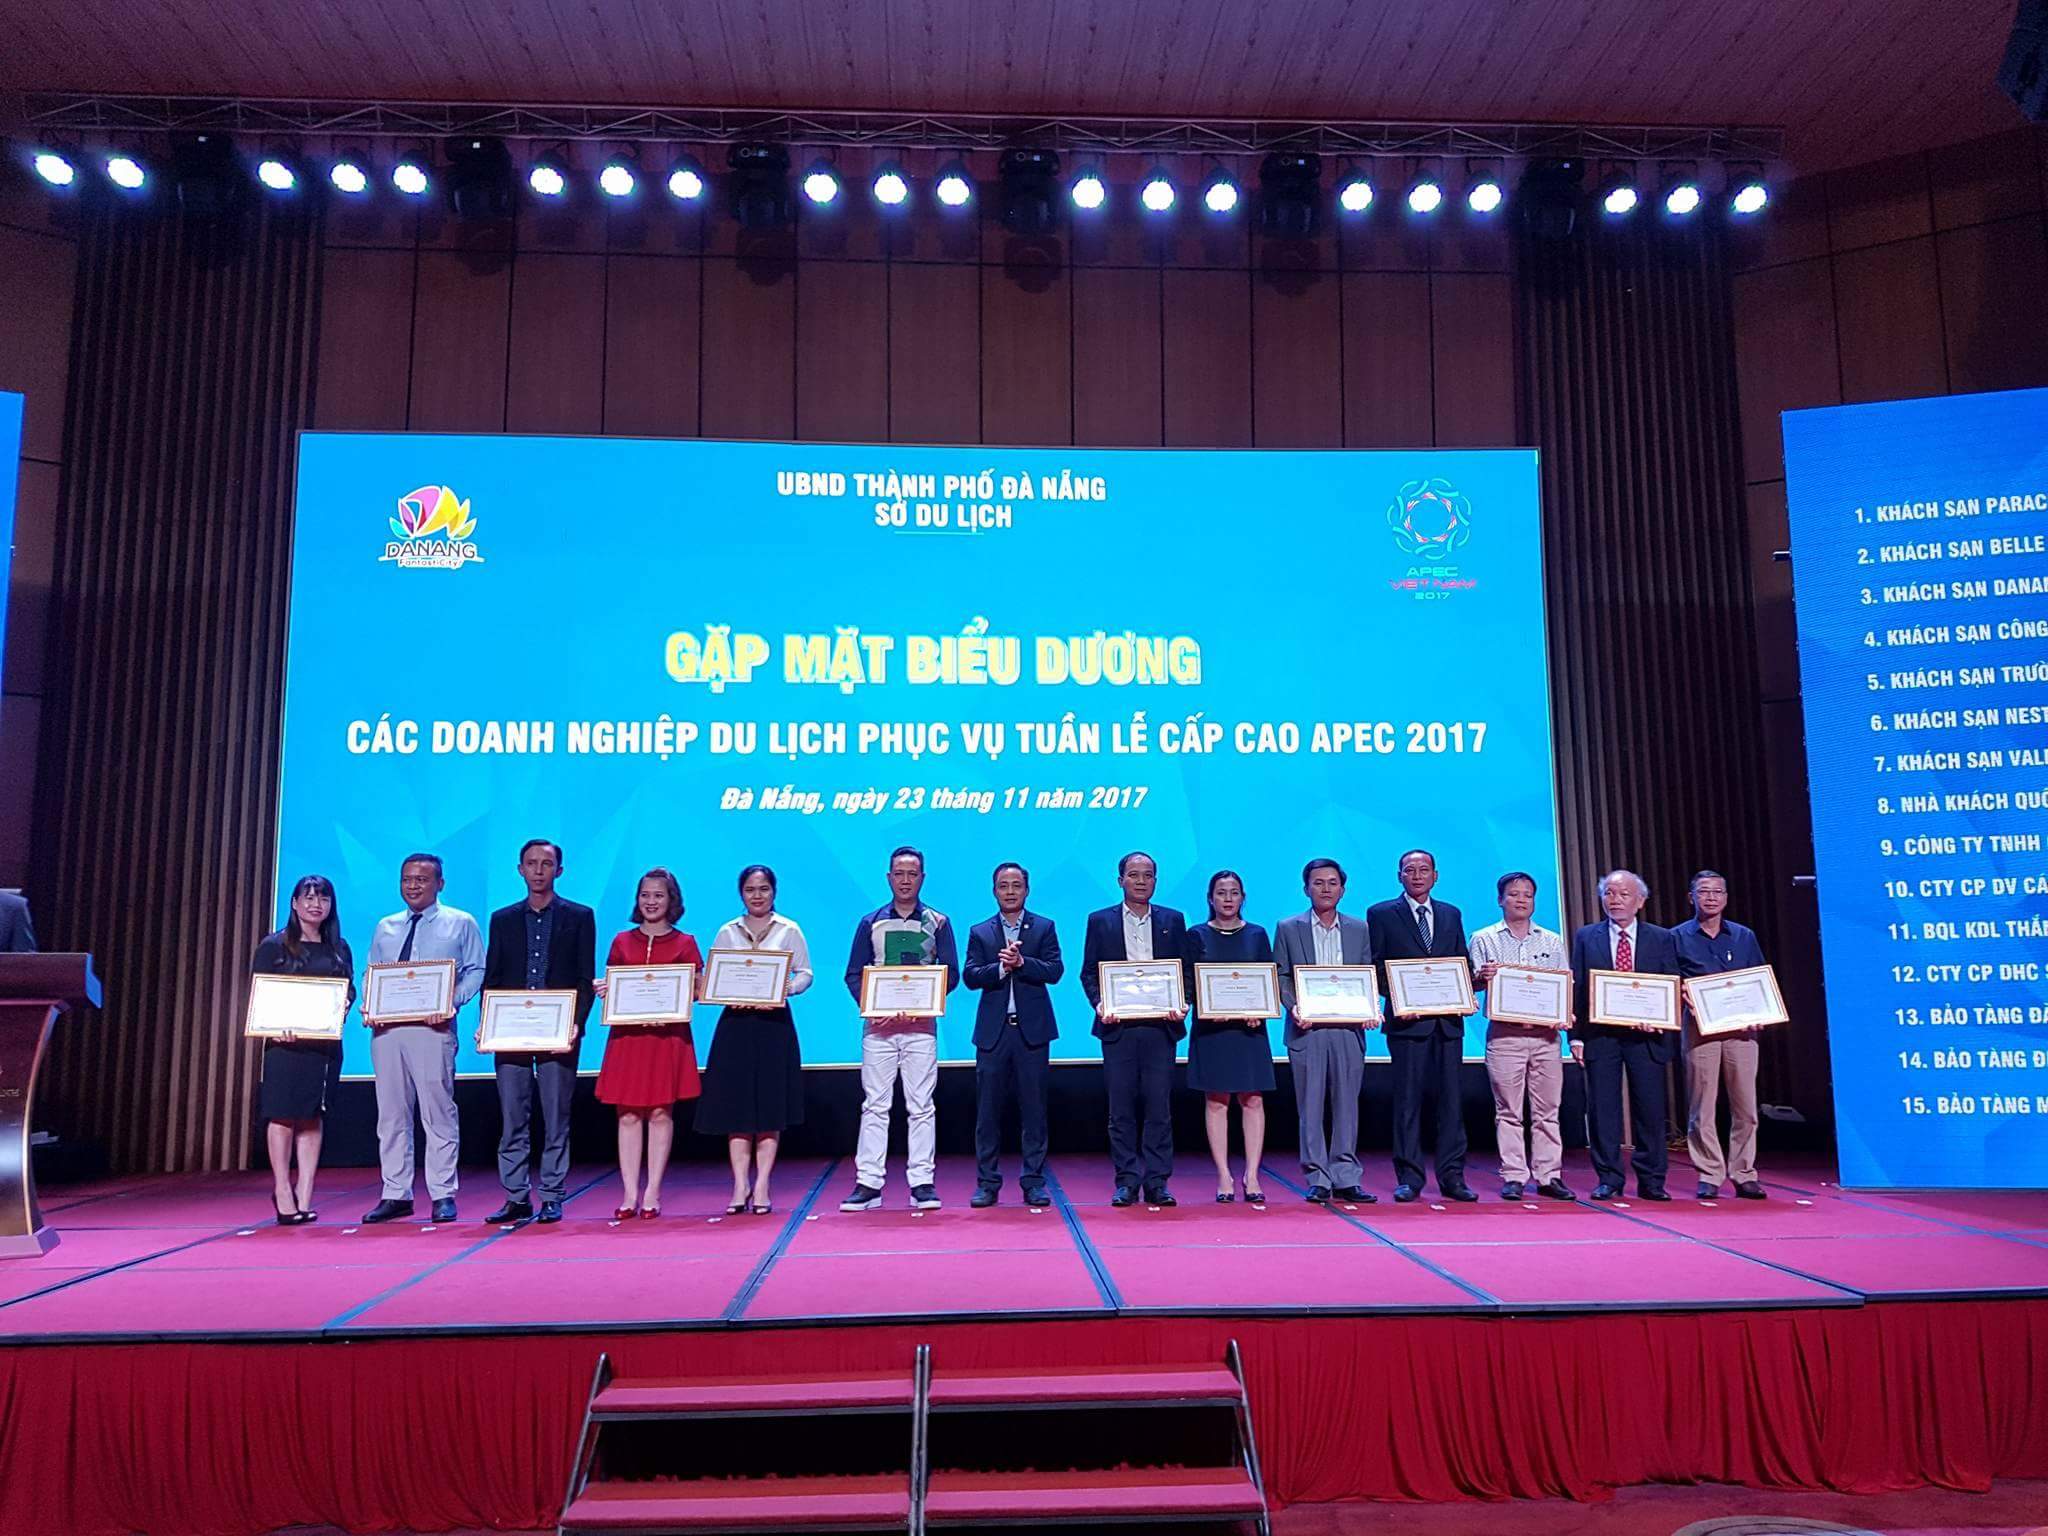 CVSKN Núi Thần Tài nhận giấy khen biểu dương doanh nghiệp phục vụ tuần lễ cấp cao APEC 2017